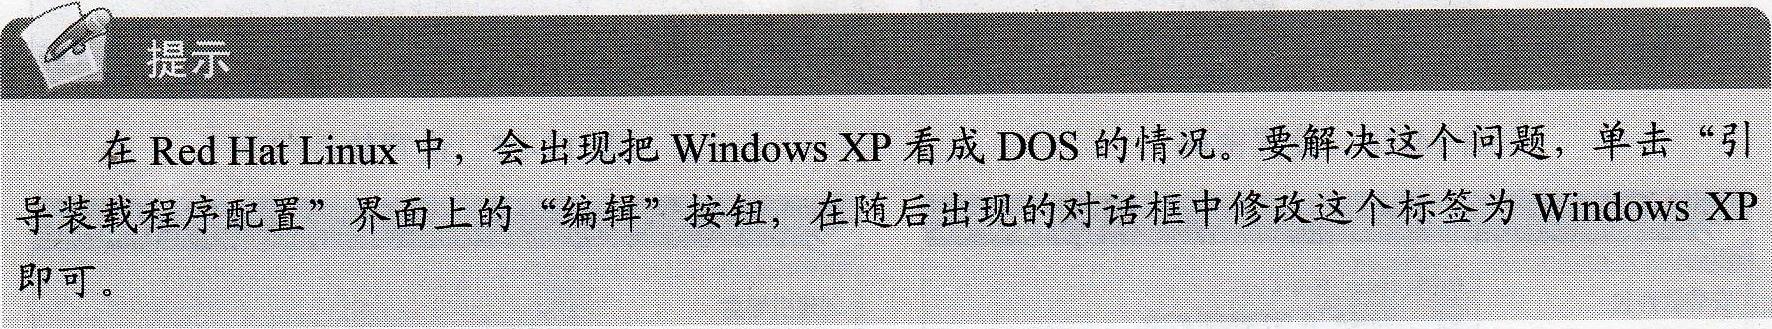 安裝Windows XP和LIUX雙系統的詳細步驟